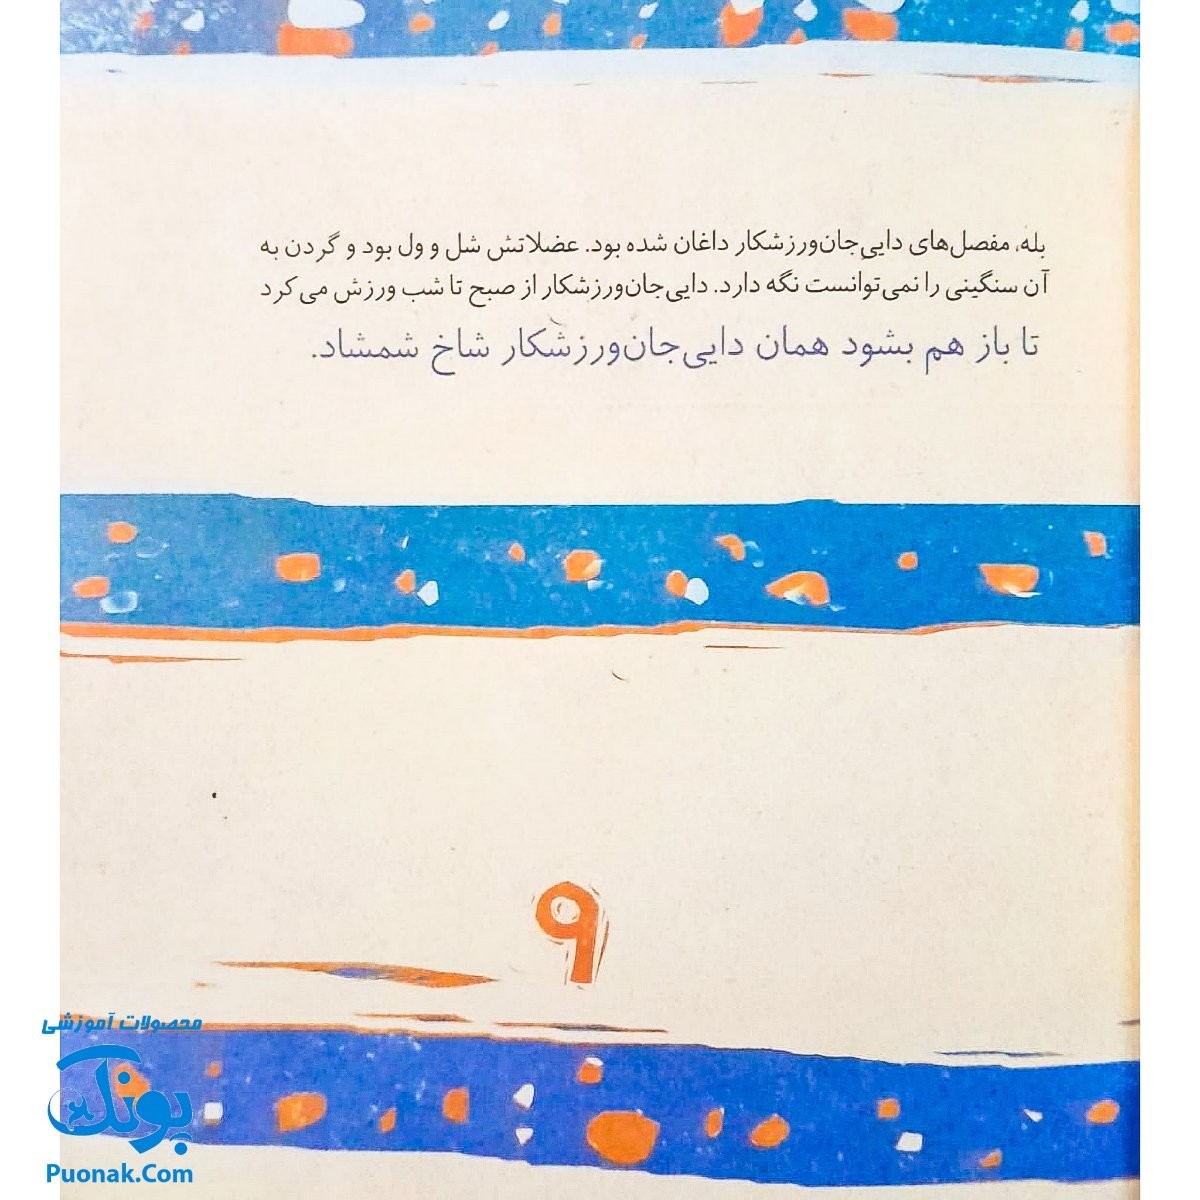 کتاب مجموعه روزهایی که پنج وجبی یک زرافه کوچولوی کوچولو بود جلد هفتم ۷ دایی جان ورزشکار